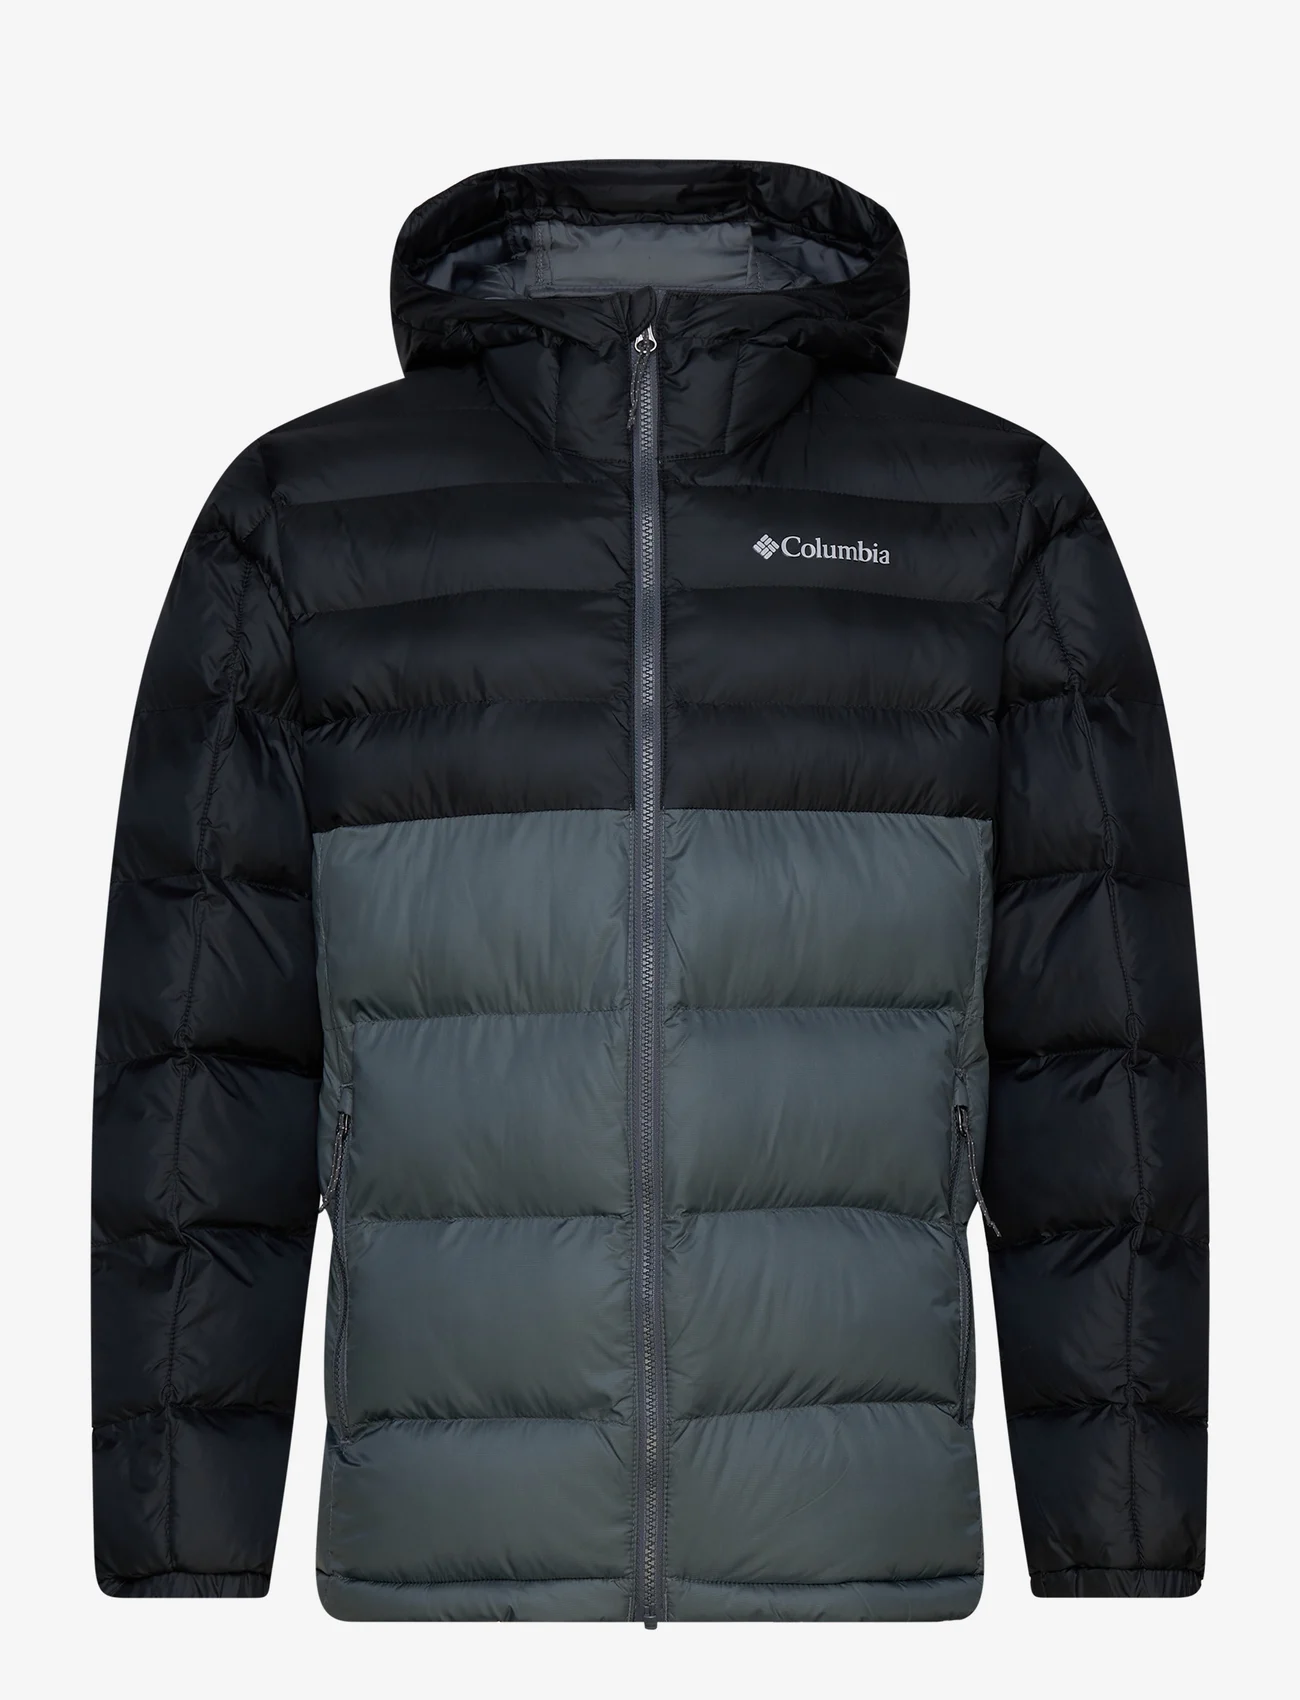 Columbia Sportswear - Buck Butte Insulated Hooded Jacket - winterjacken - graphite, black - 0